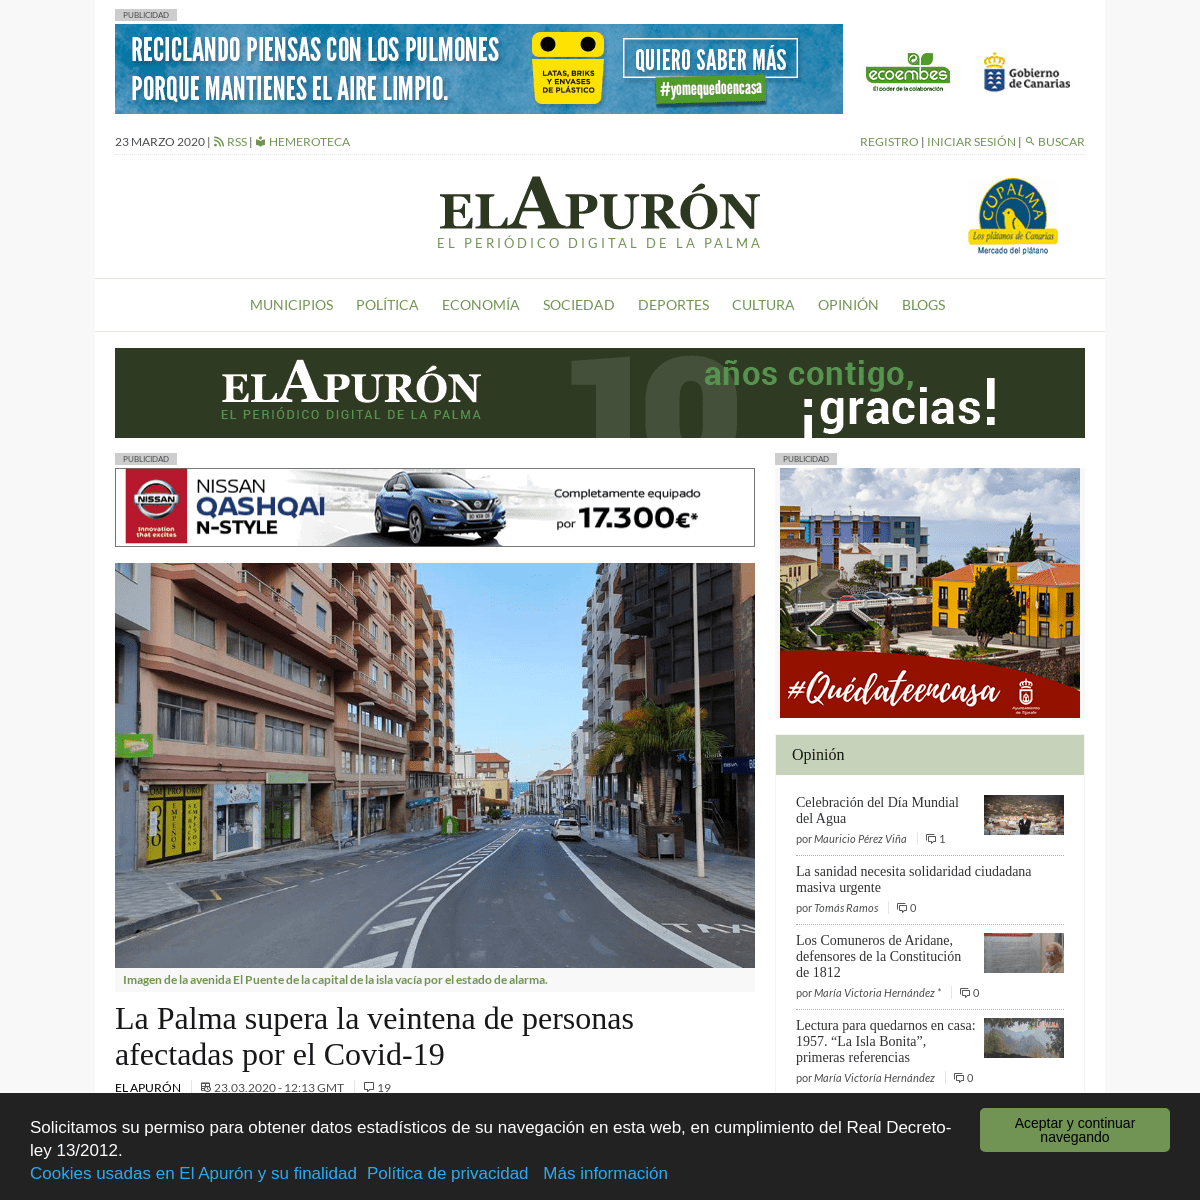 A complete backup of elapuron.com